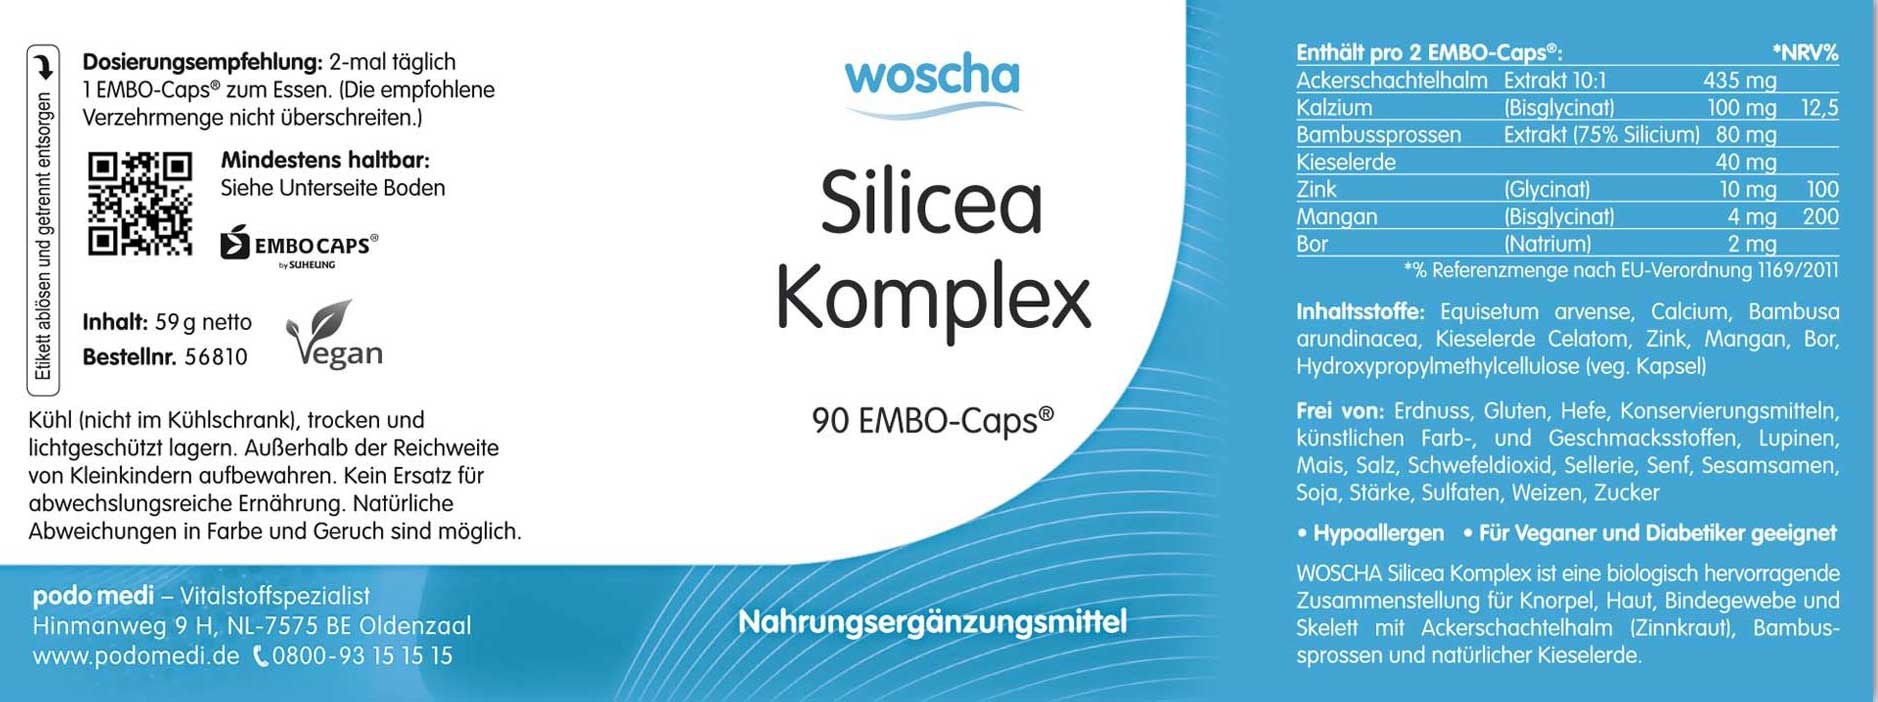 Woscha Silicea Komplex von podo medi beinhaltet 90 Kapseln Etikett